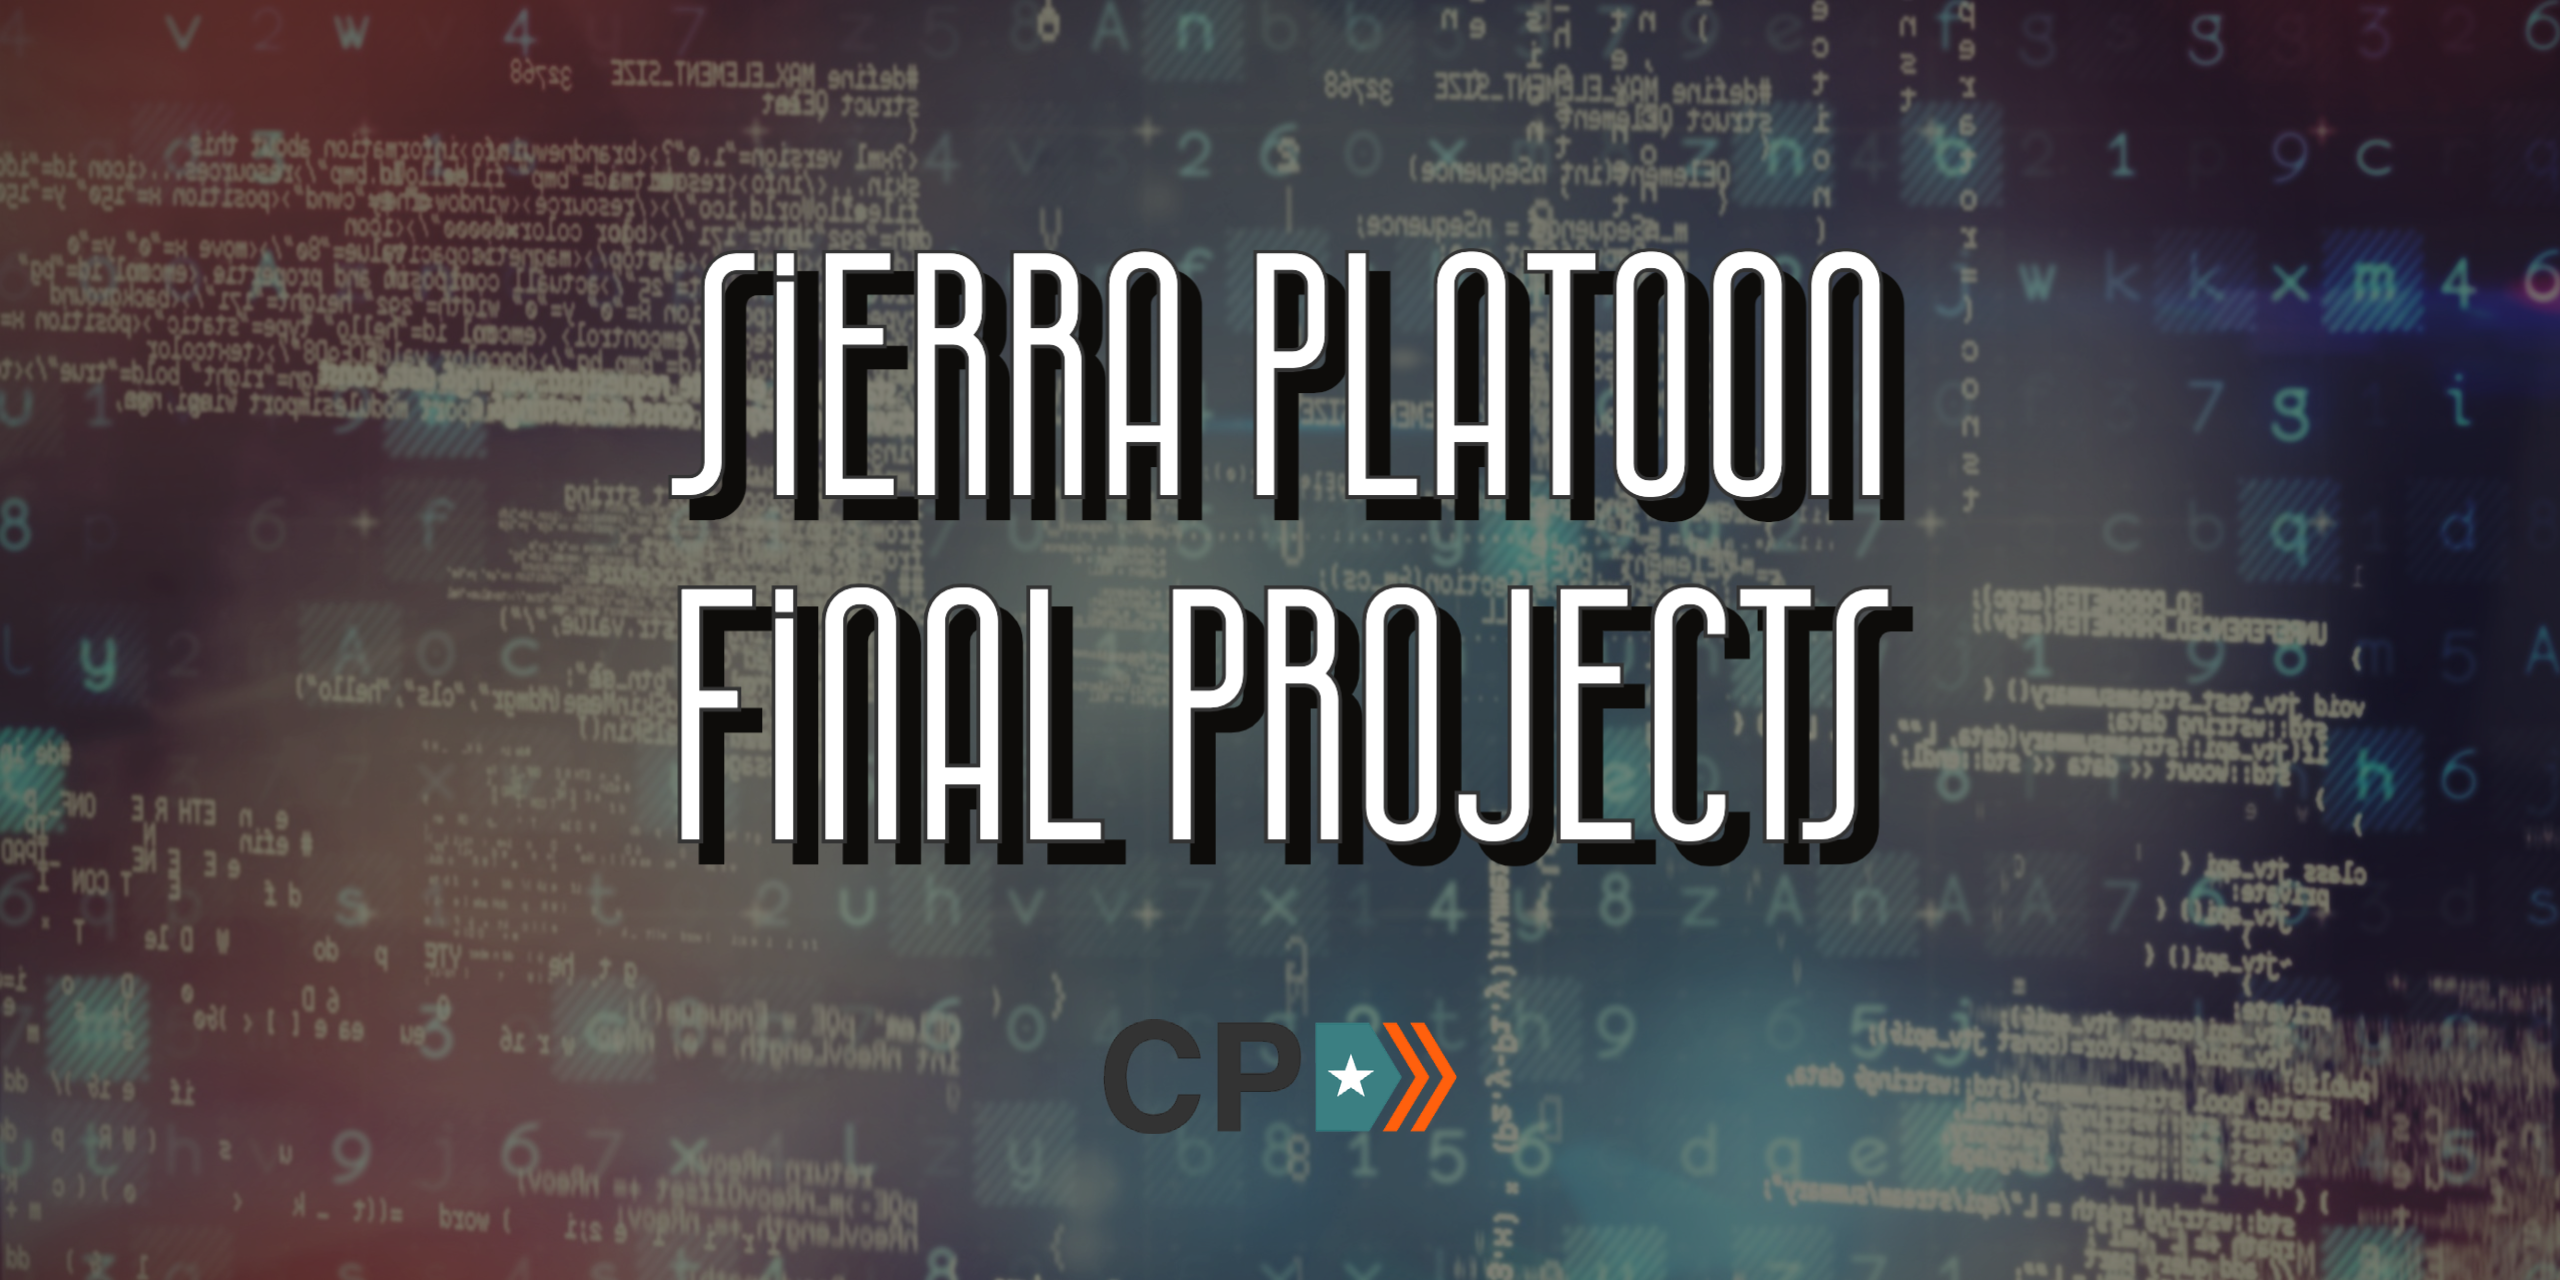 Sierra Platoon Final Projects